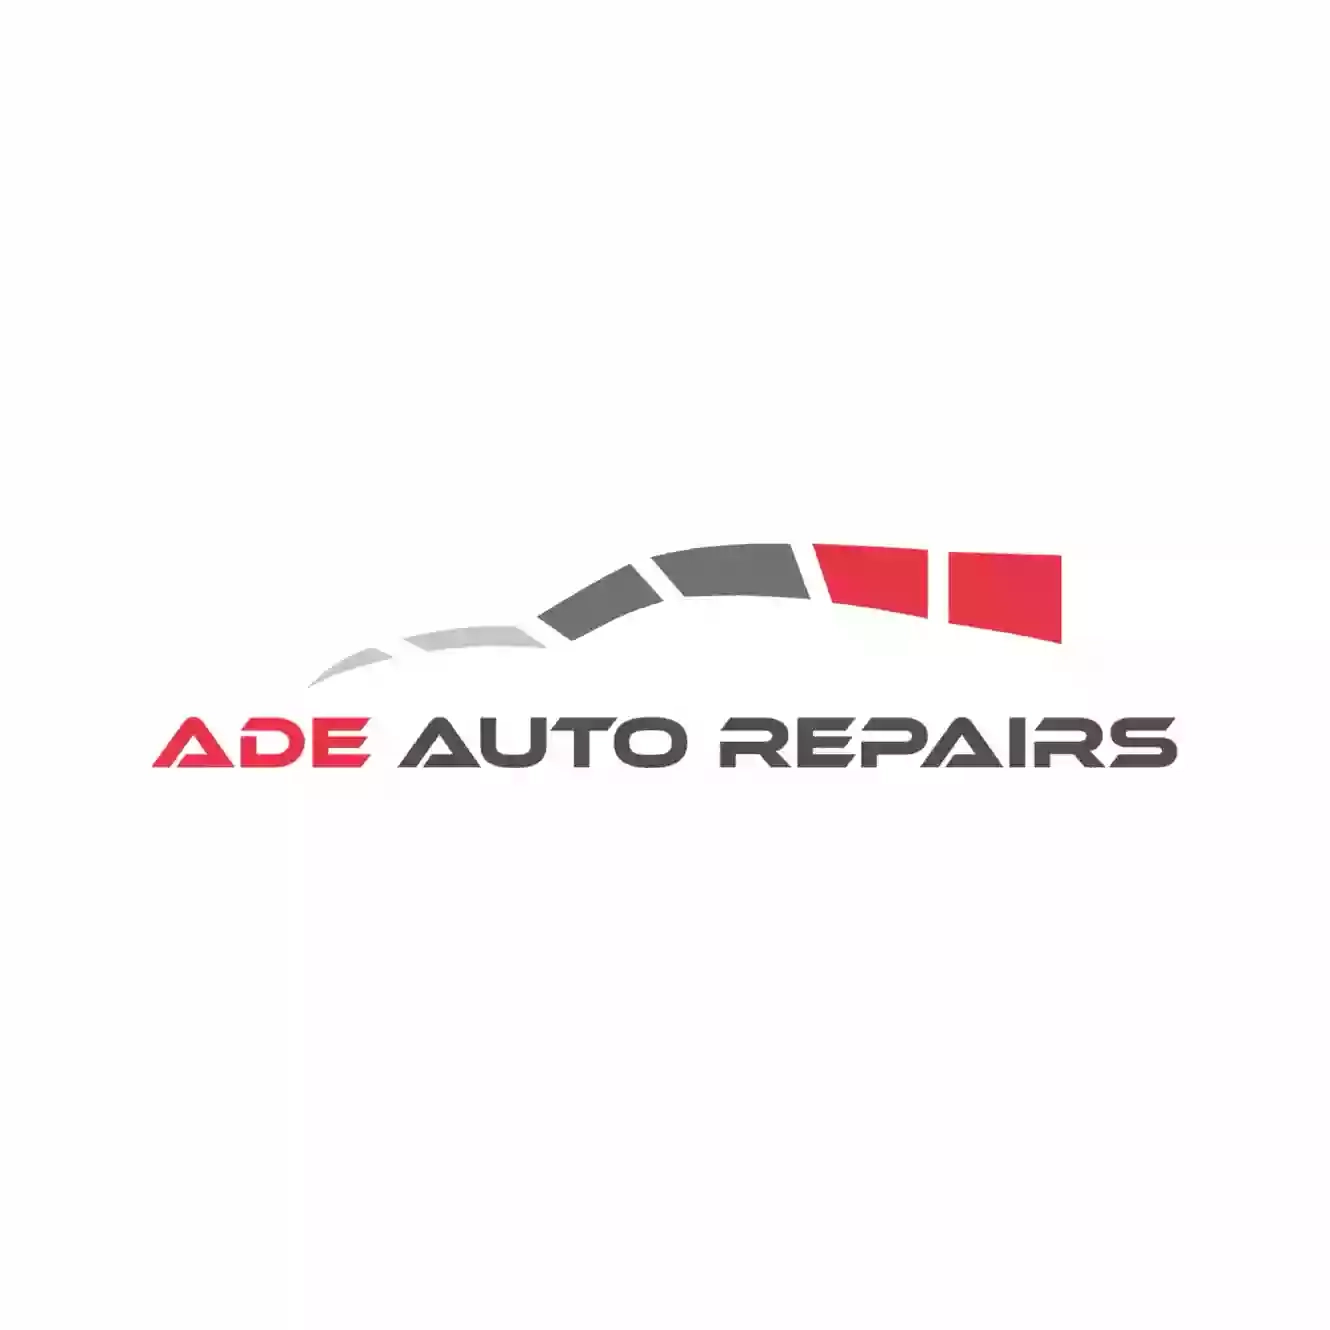 Ade Auto Repairs (Ratcliff)